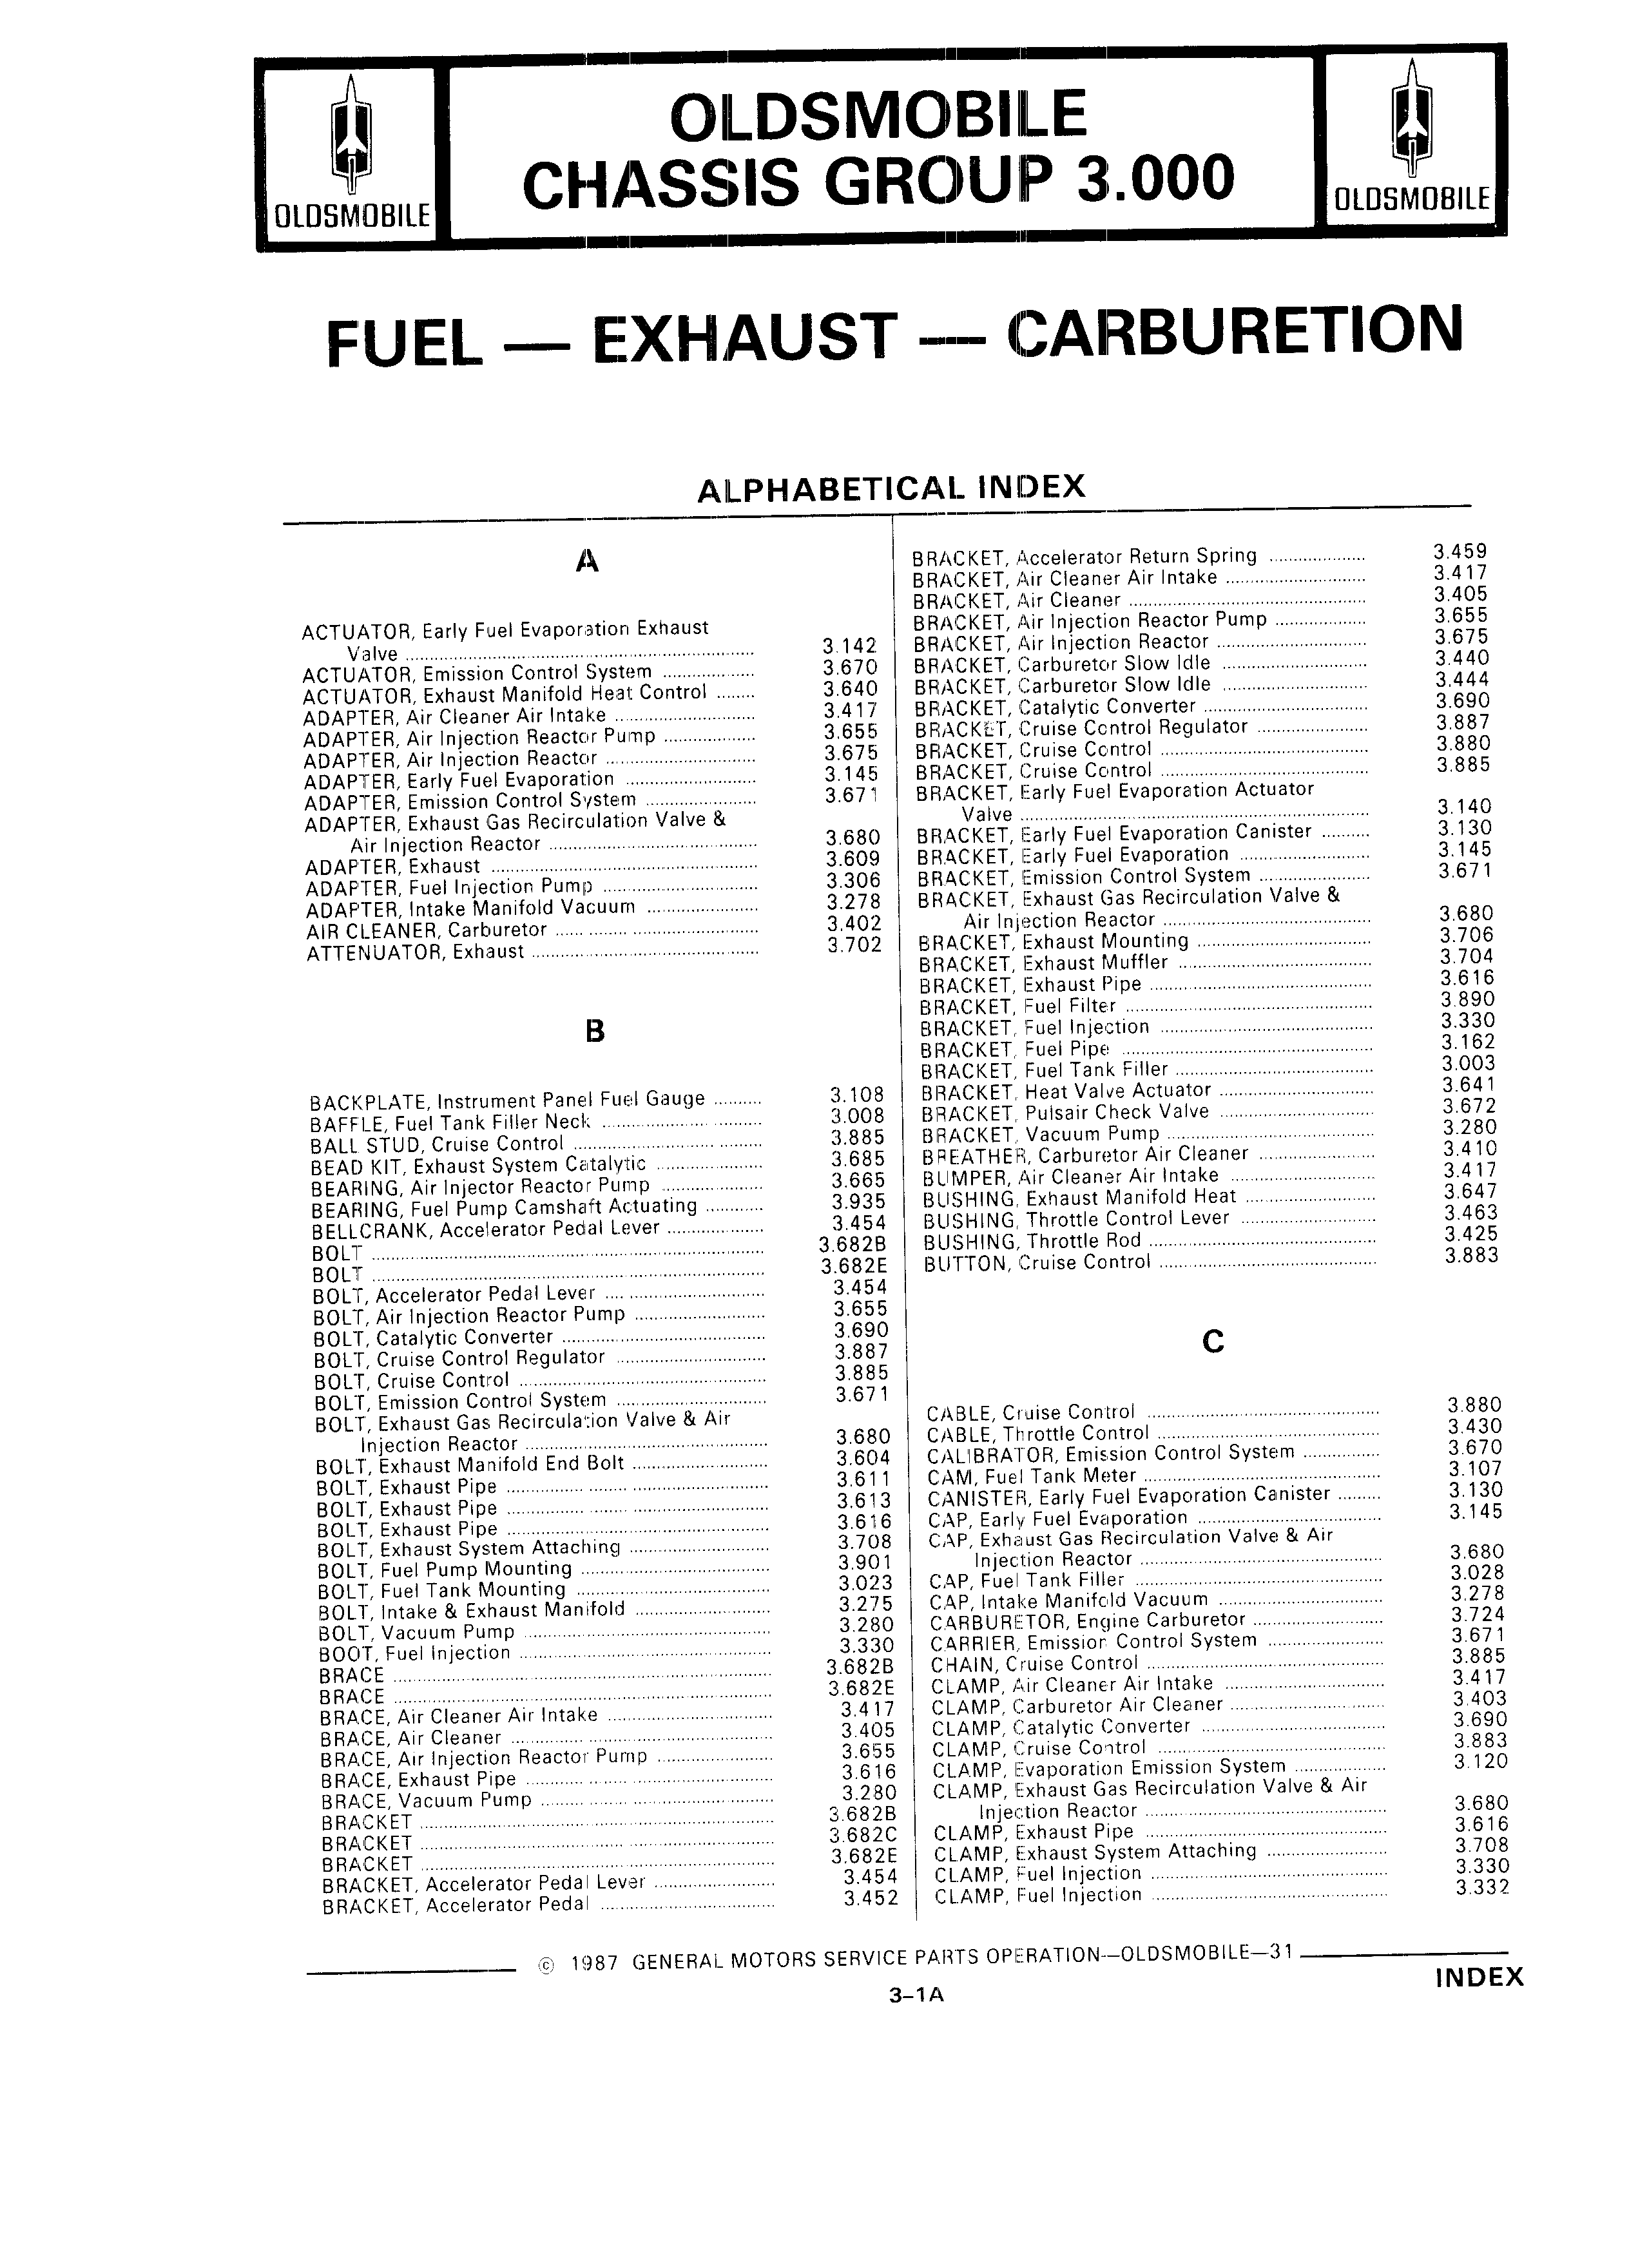 Parts Catalog 31 July 1987